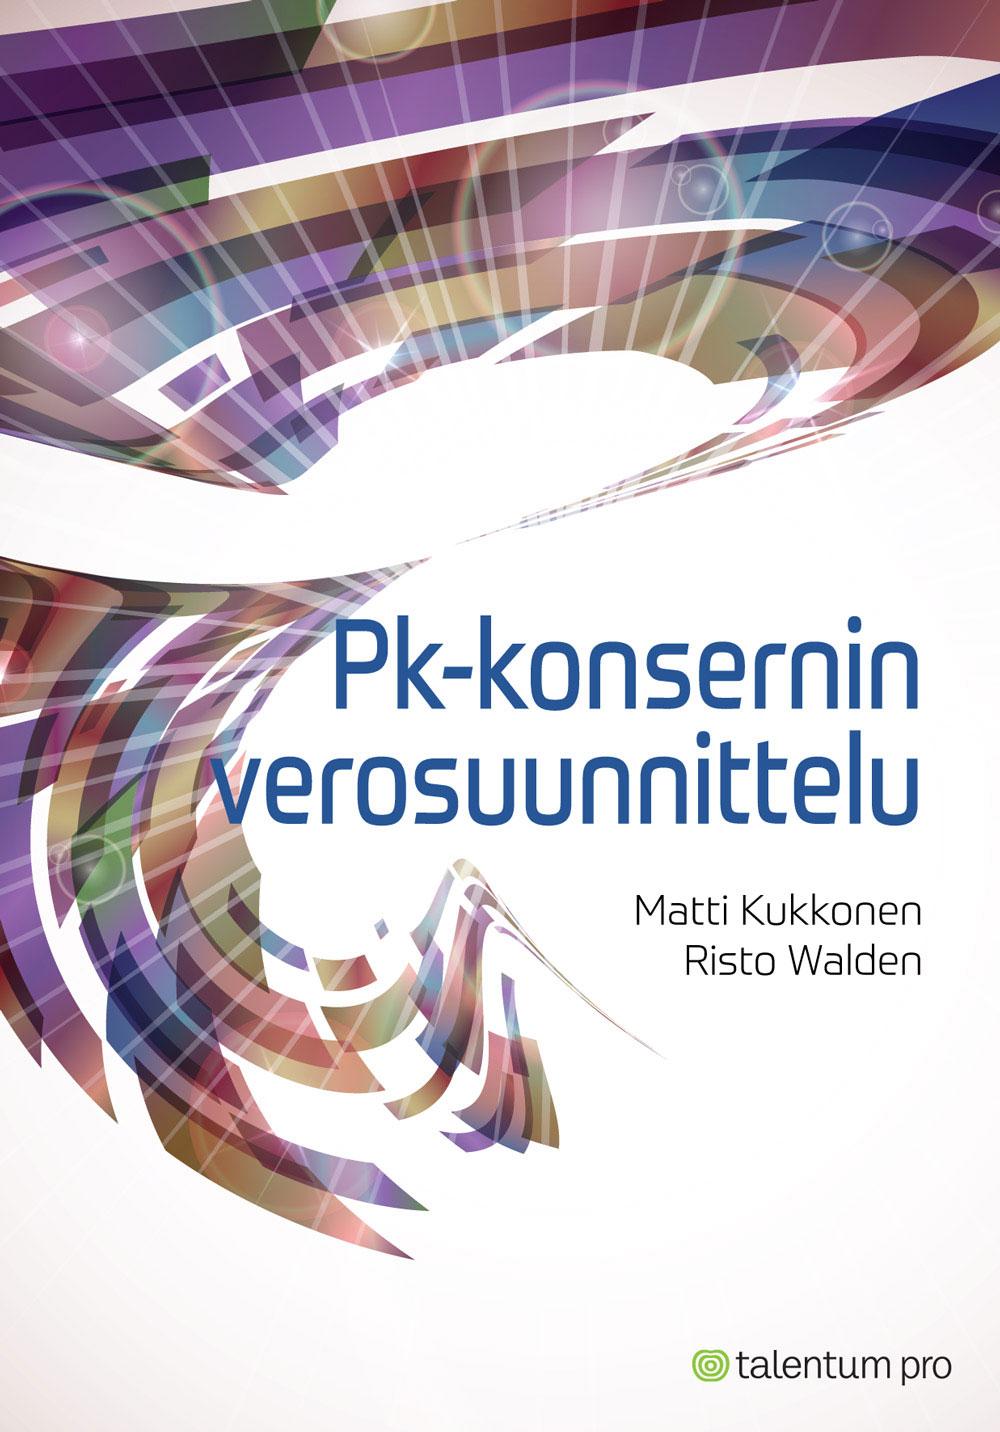 Pk-konsernin verosuunnittelu, Matti Kukkonen ja Risto Walden.